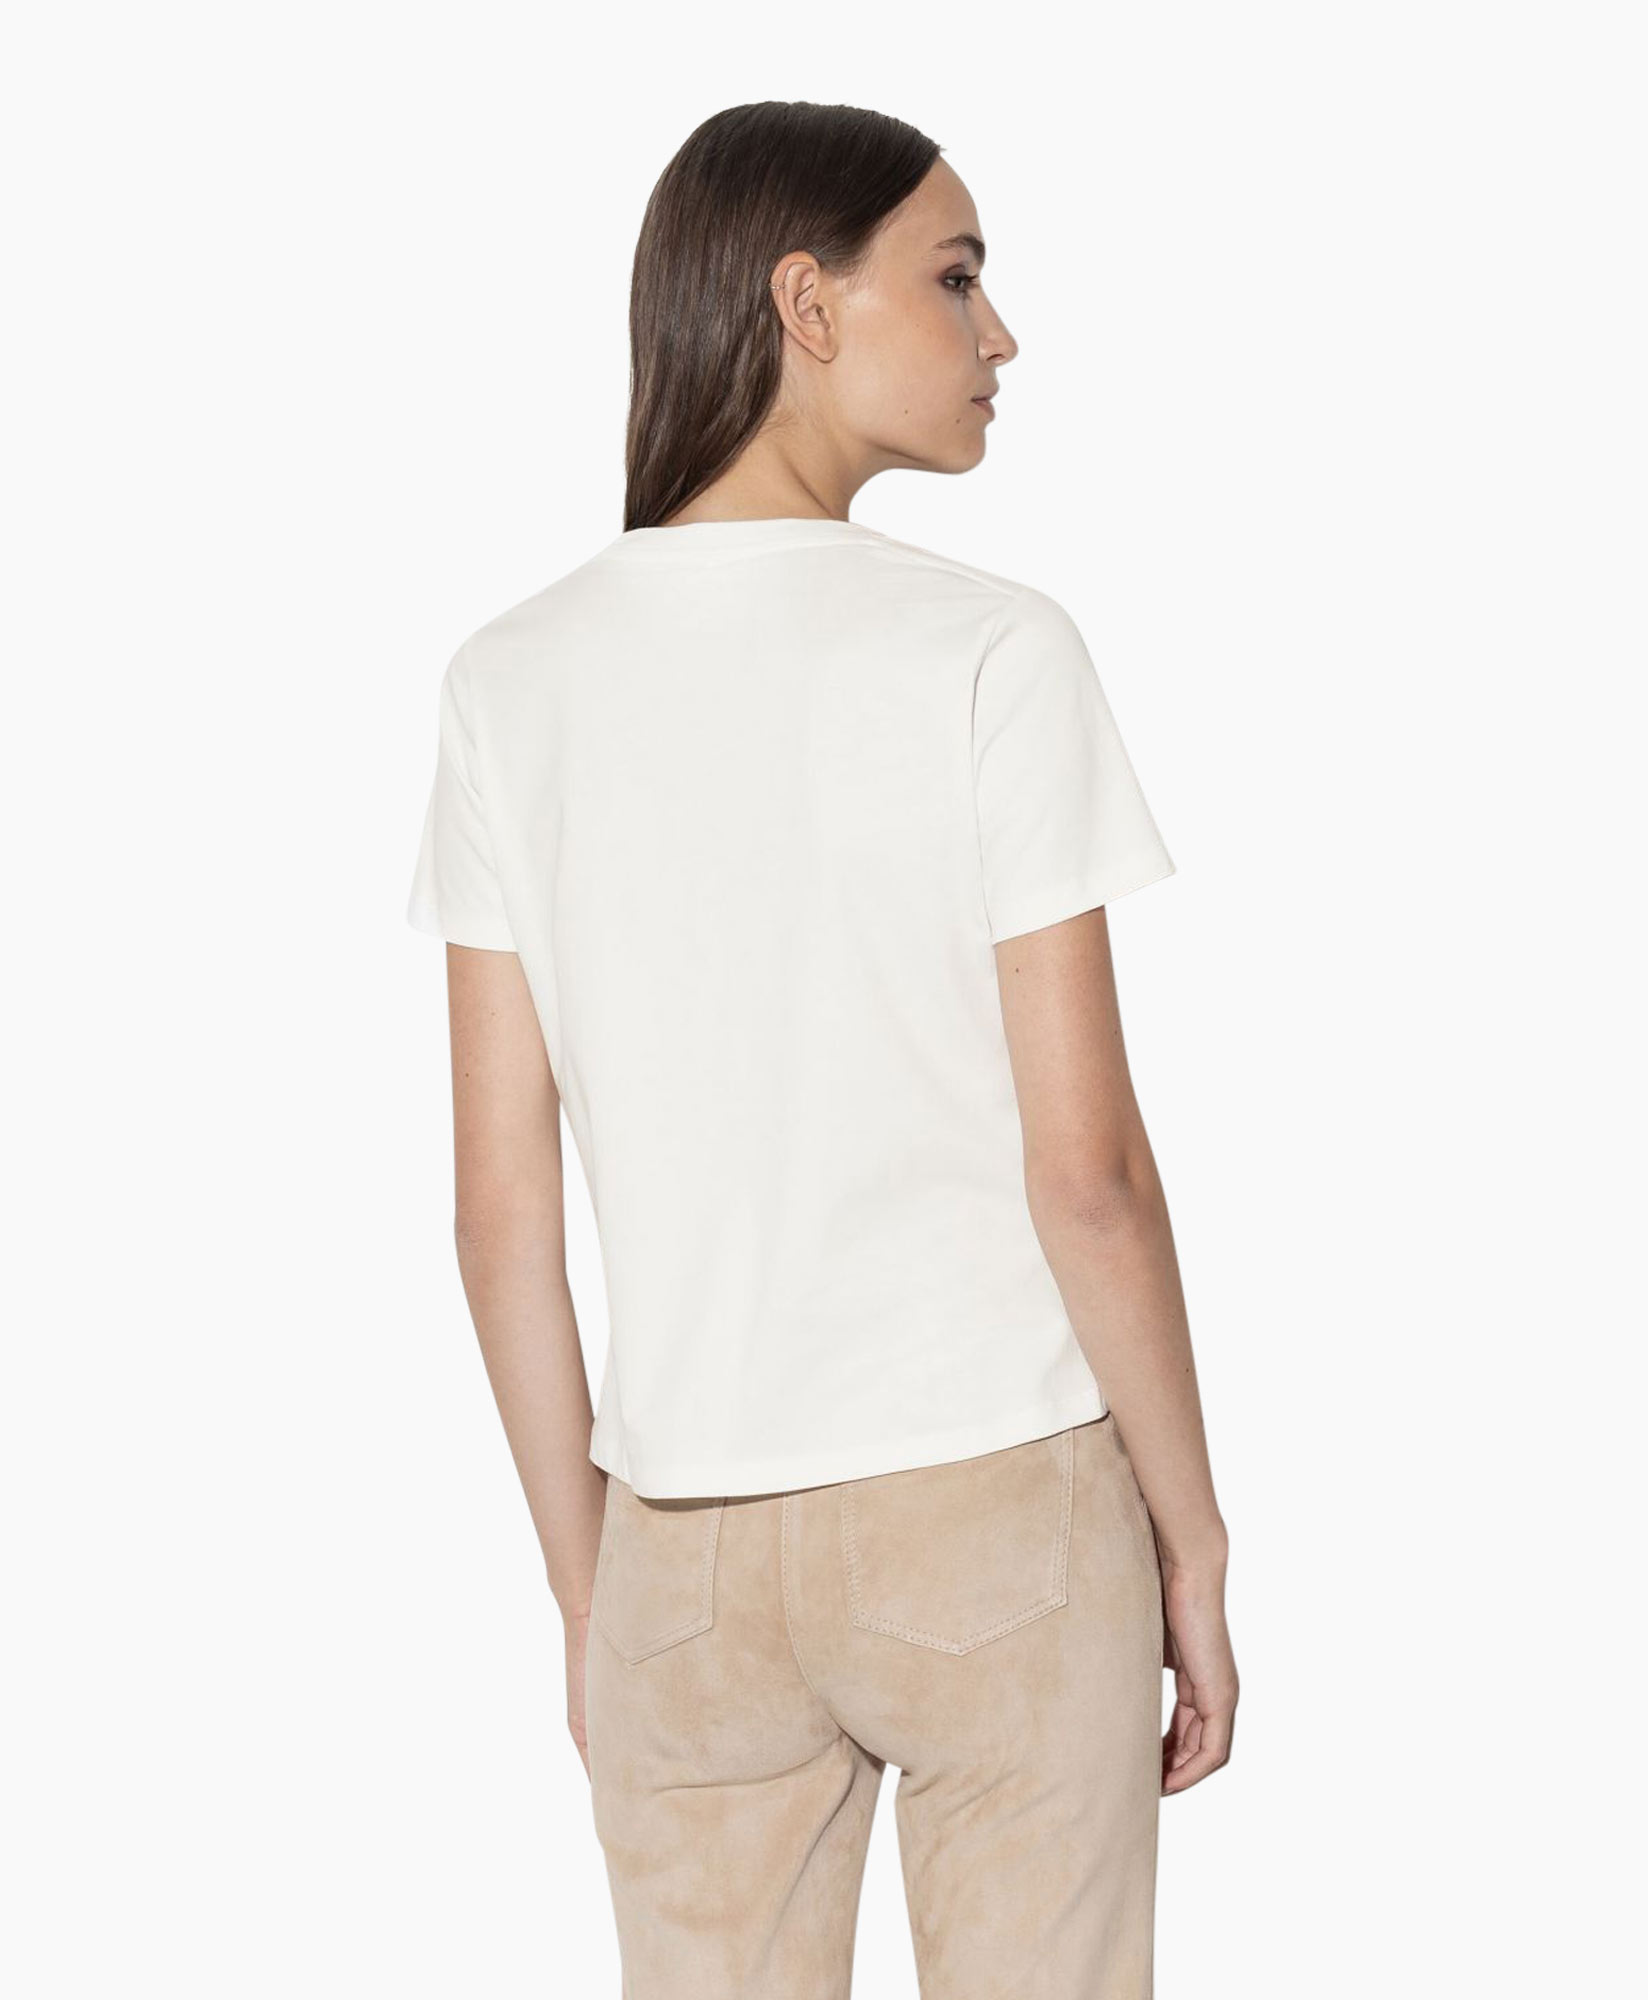 T-shirt Korte Mouw 398113/7799-0 Off White